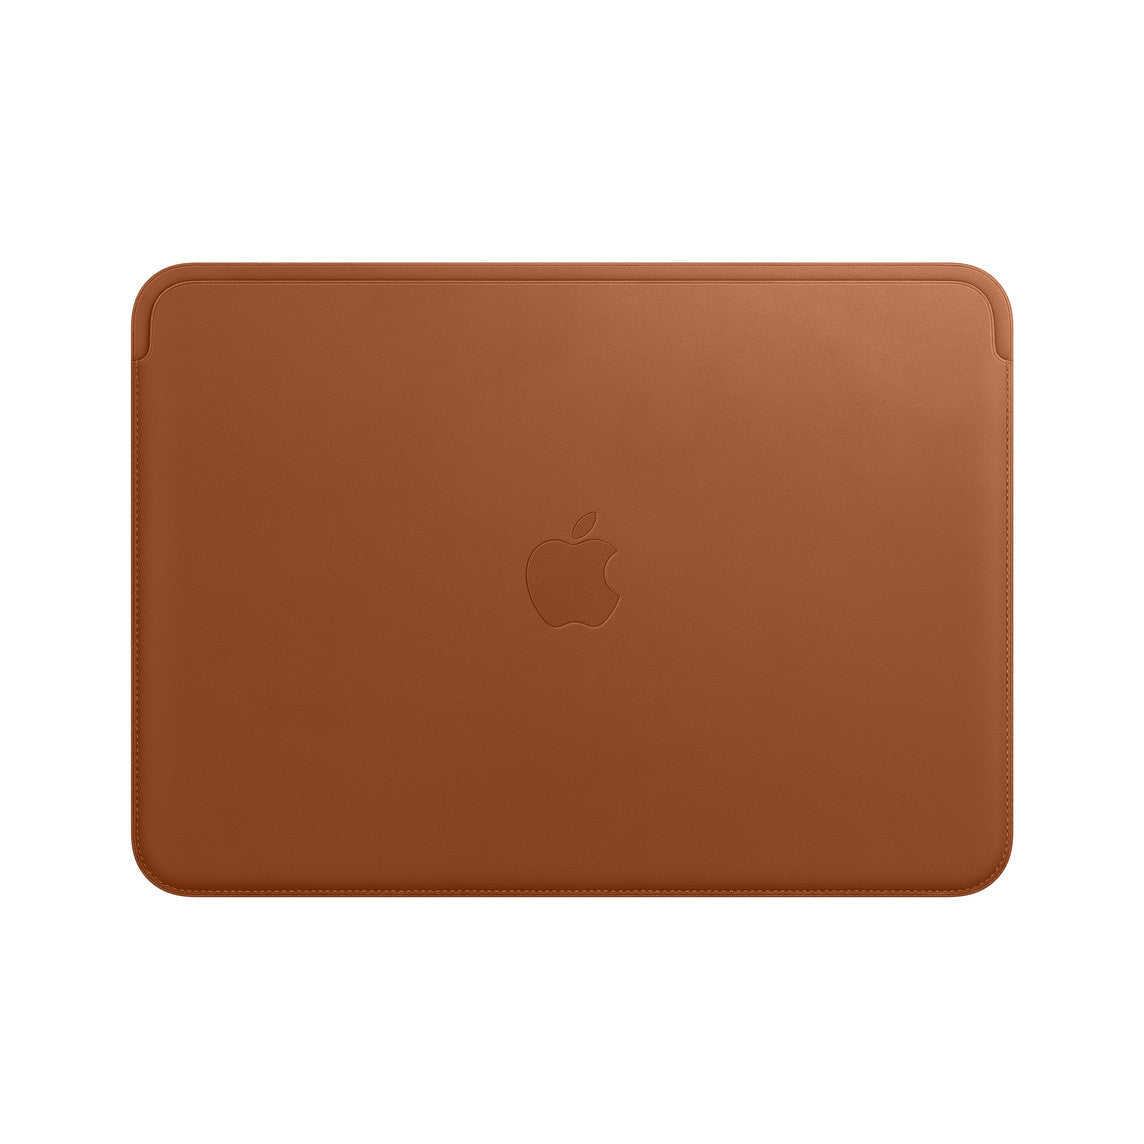 Funda de piel para el MacBook Pro y MacBook Air de 13 pulgadas - Marrón caramelo